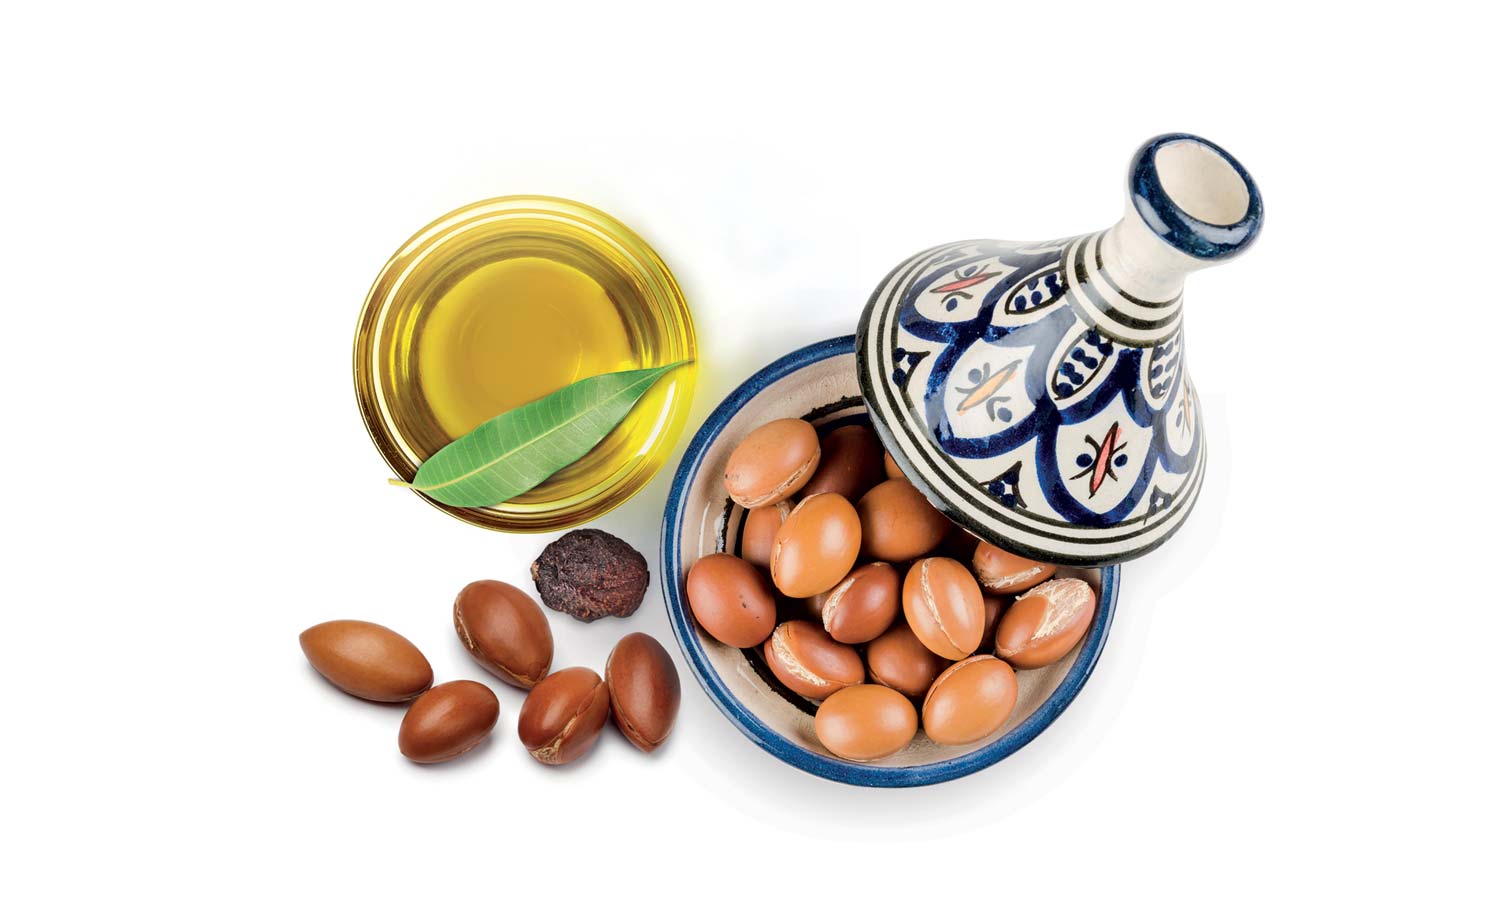 Semi e olio di argan con tajine bianca e blu usati nel packaging design di prodotti cosmetici naturali realizzato da WillBe